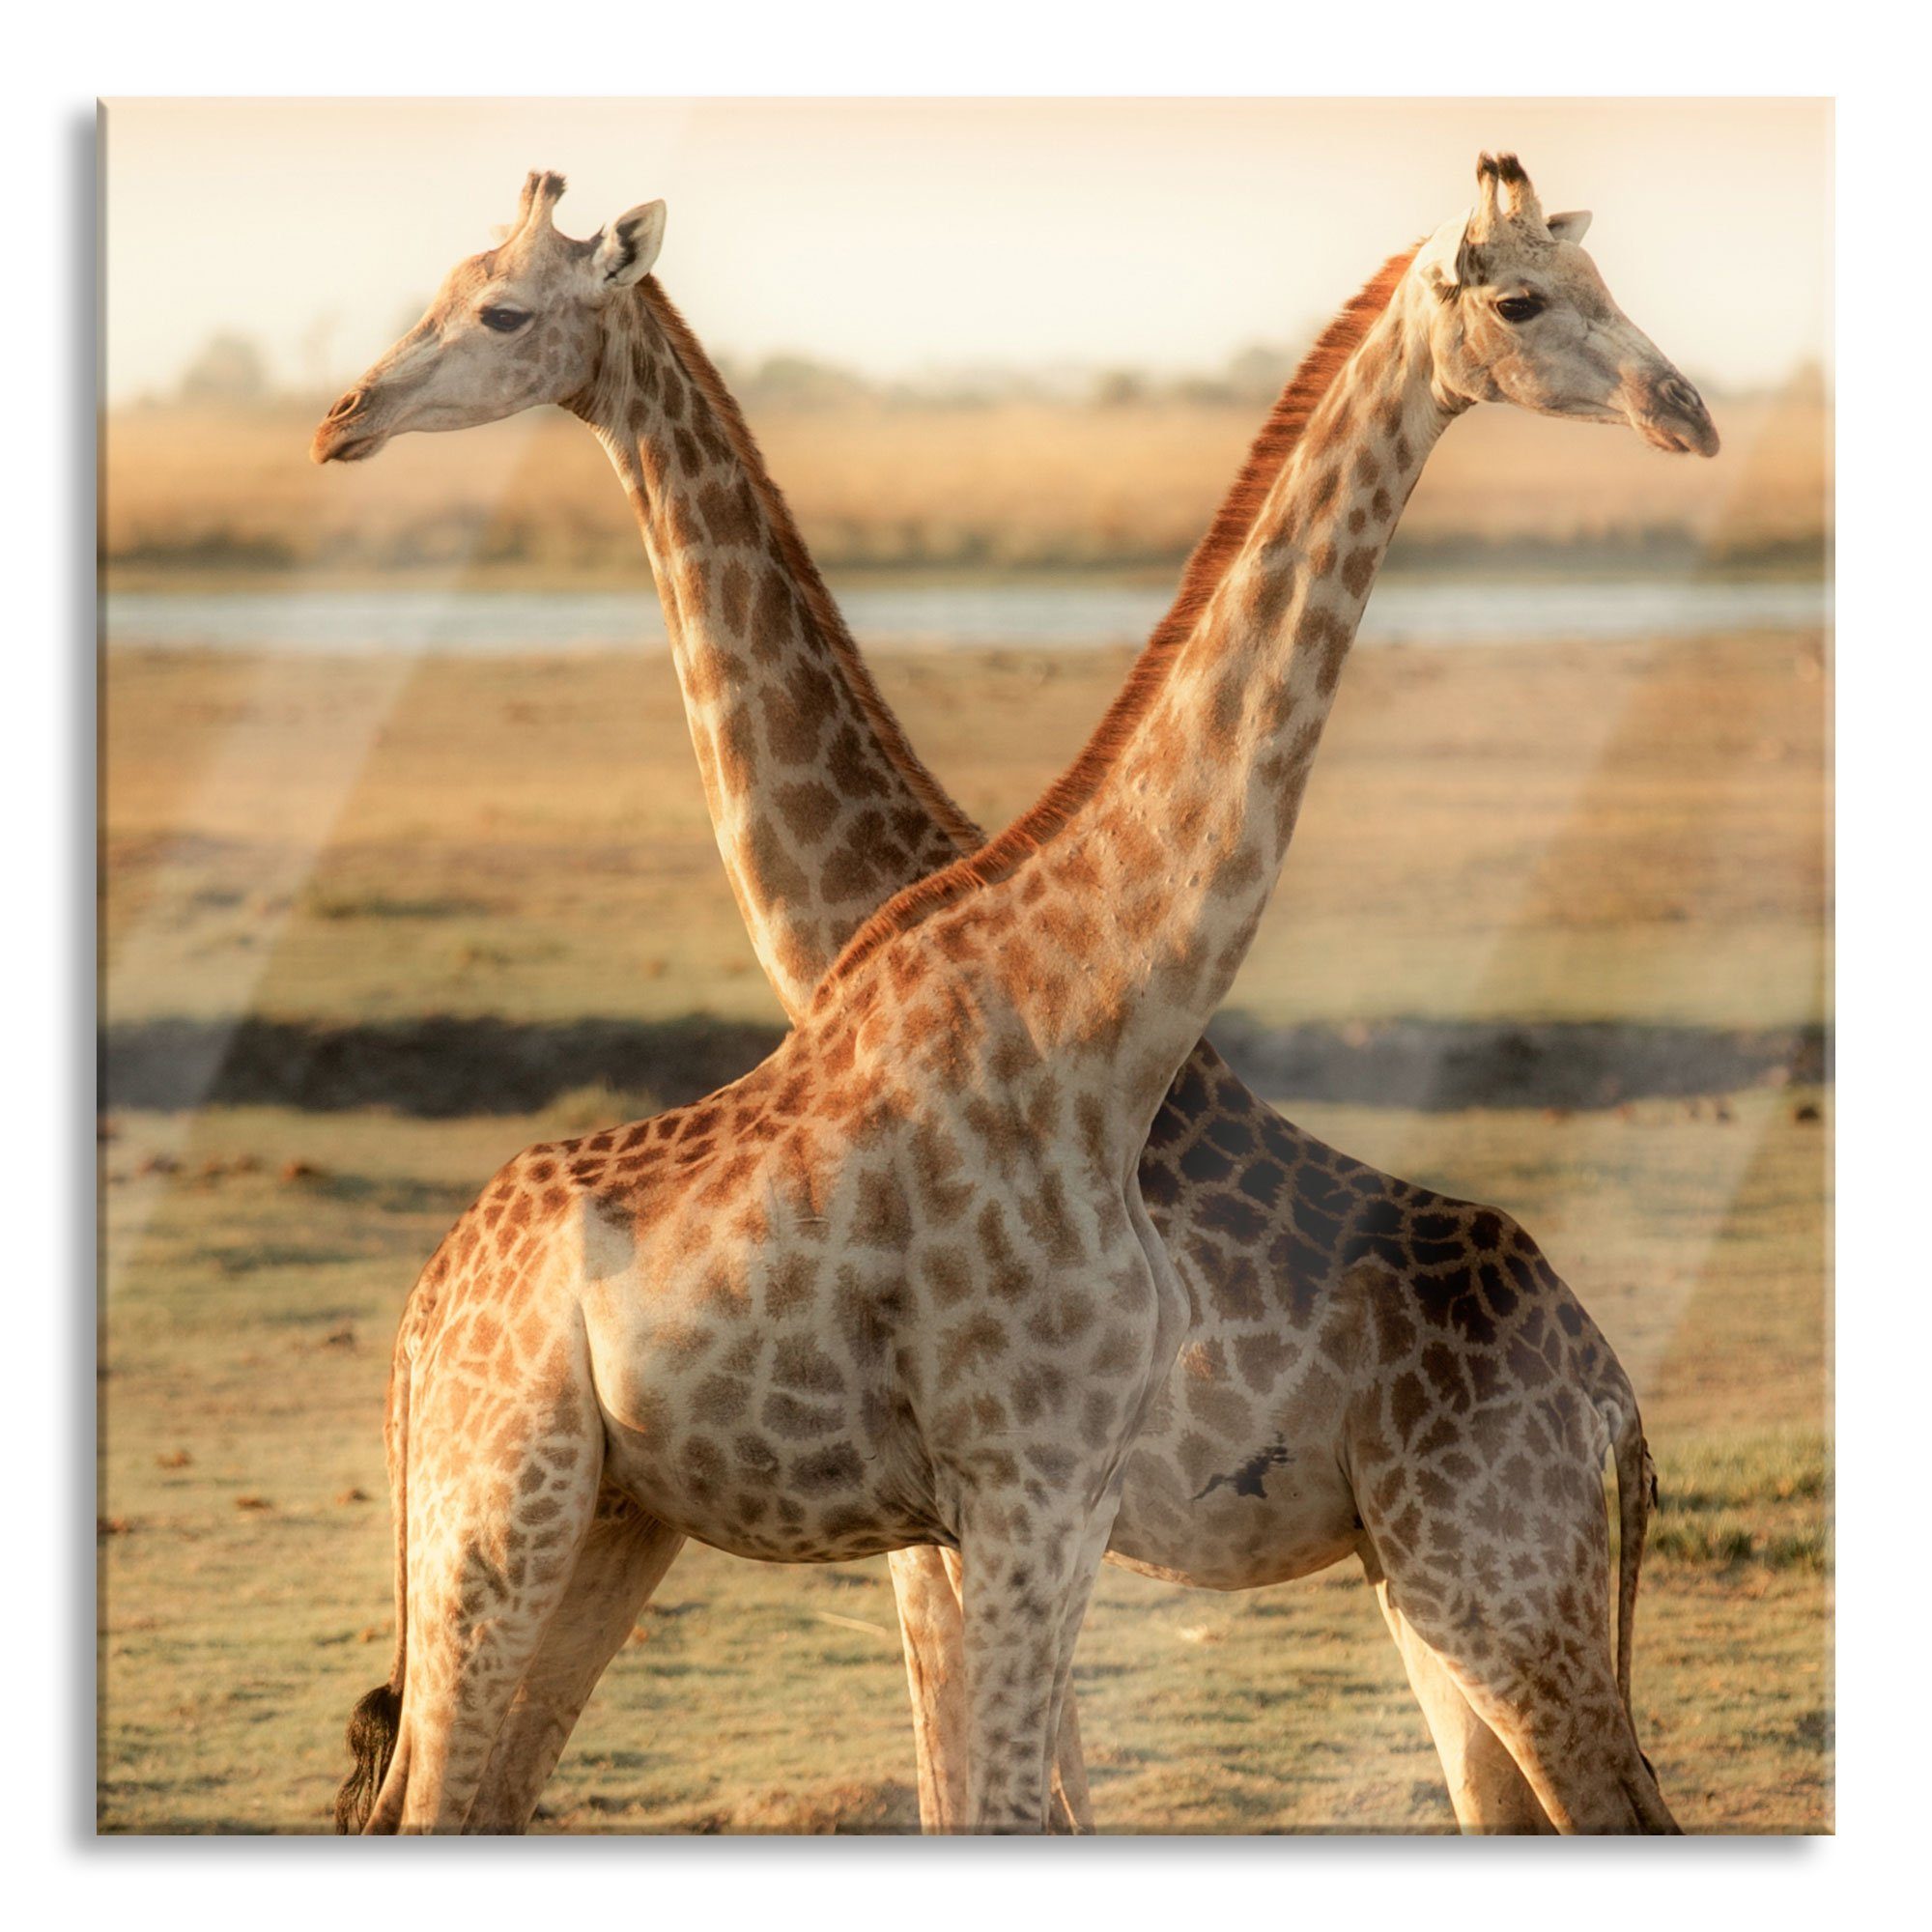 Pixxprint Glasbild Giraffen Paar, Giraffen Paar (1 St), Glasbild aus Echtglas, inkl. Aufhängungen und Abstandshalter